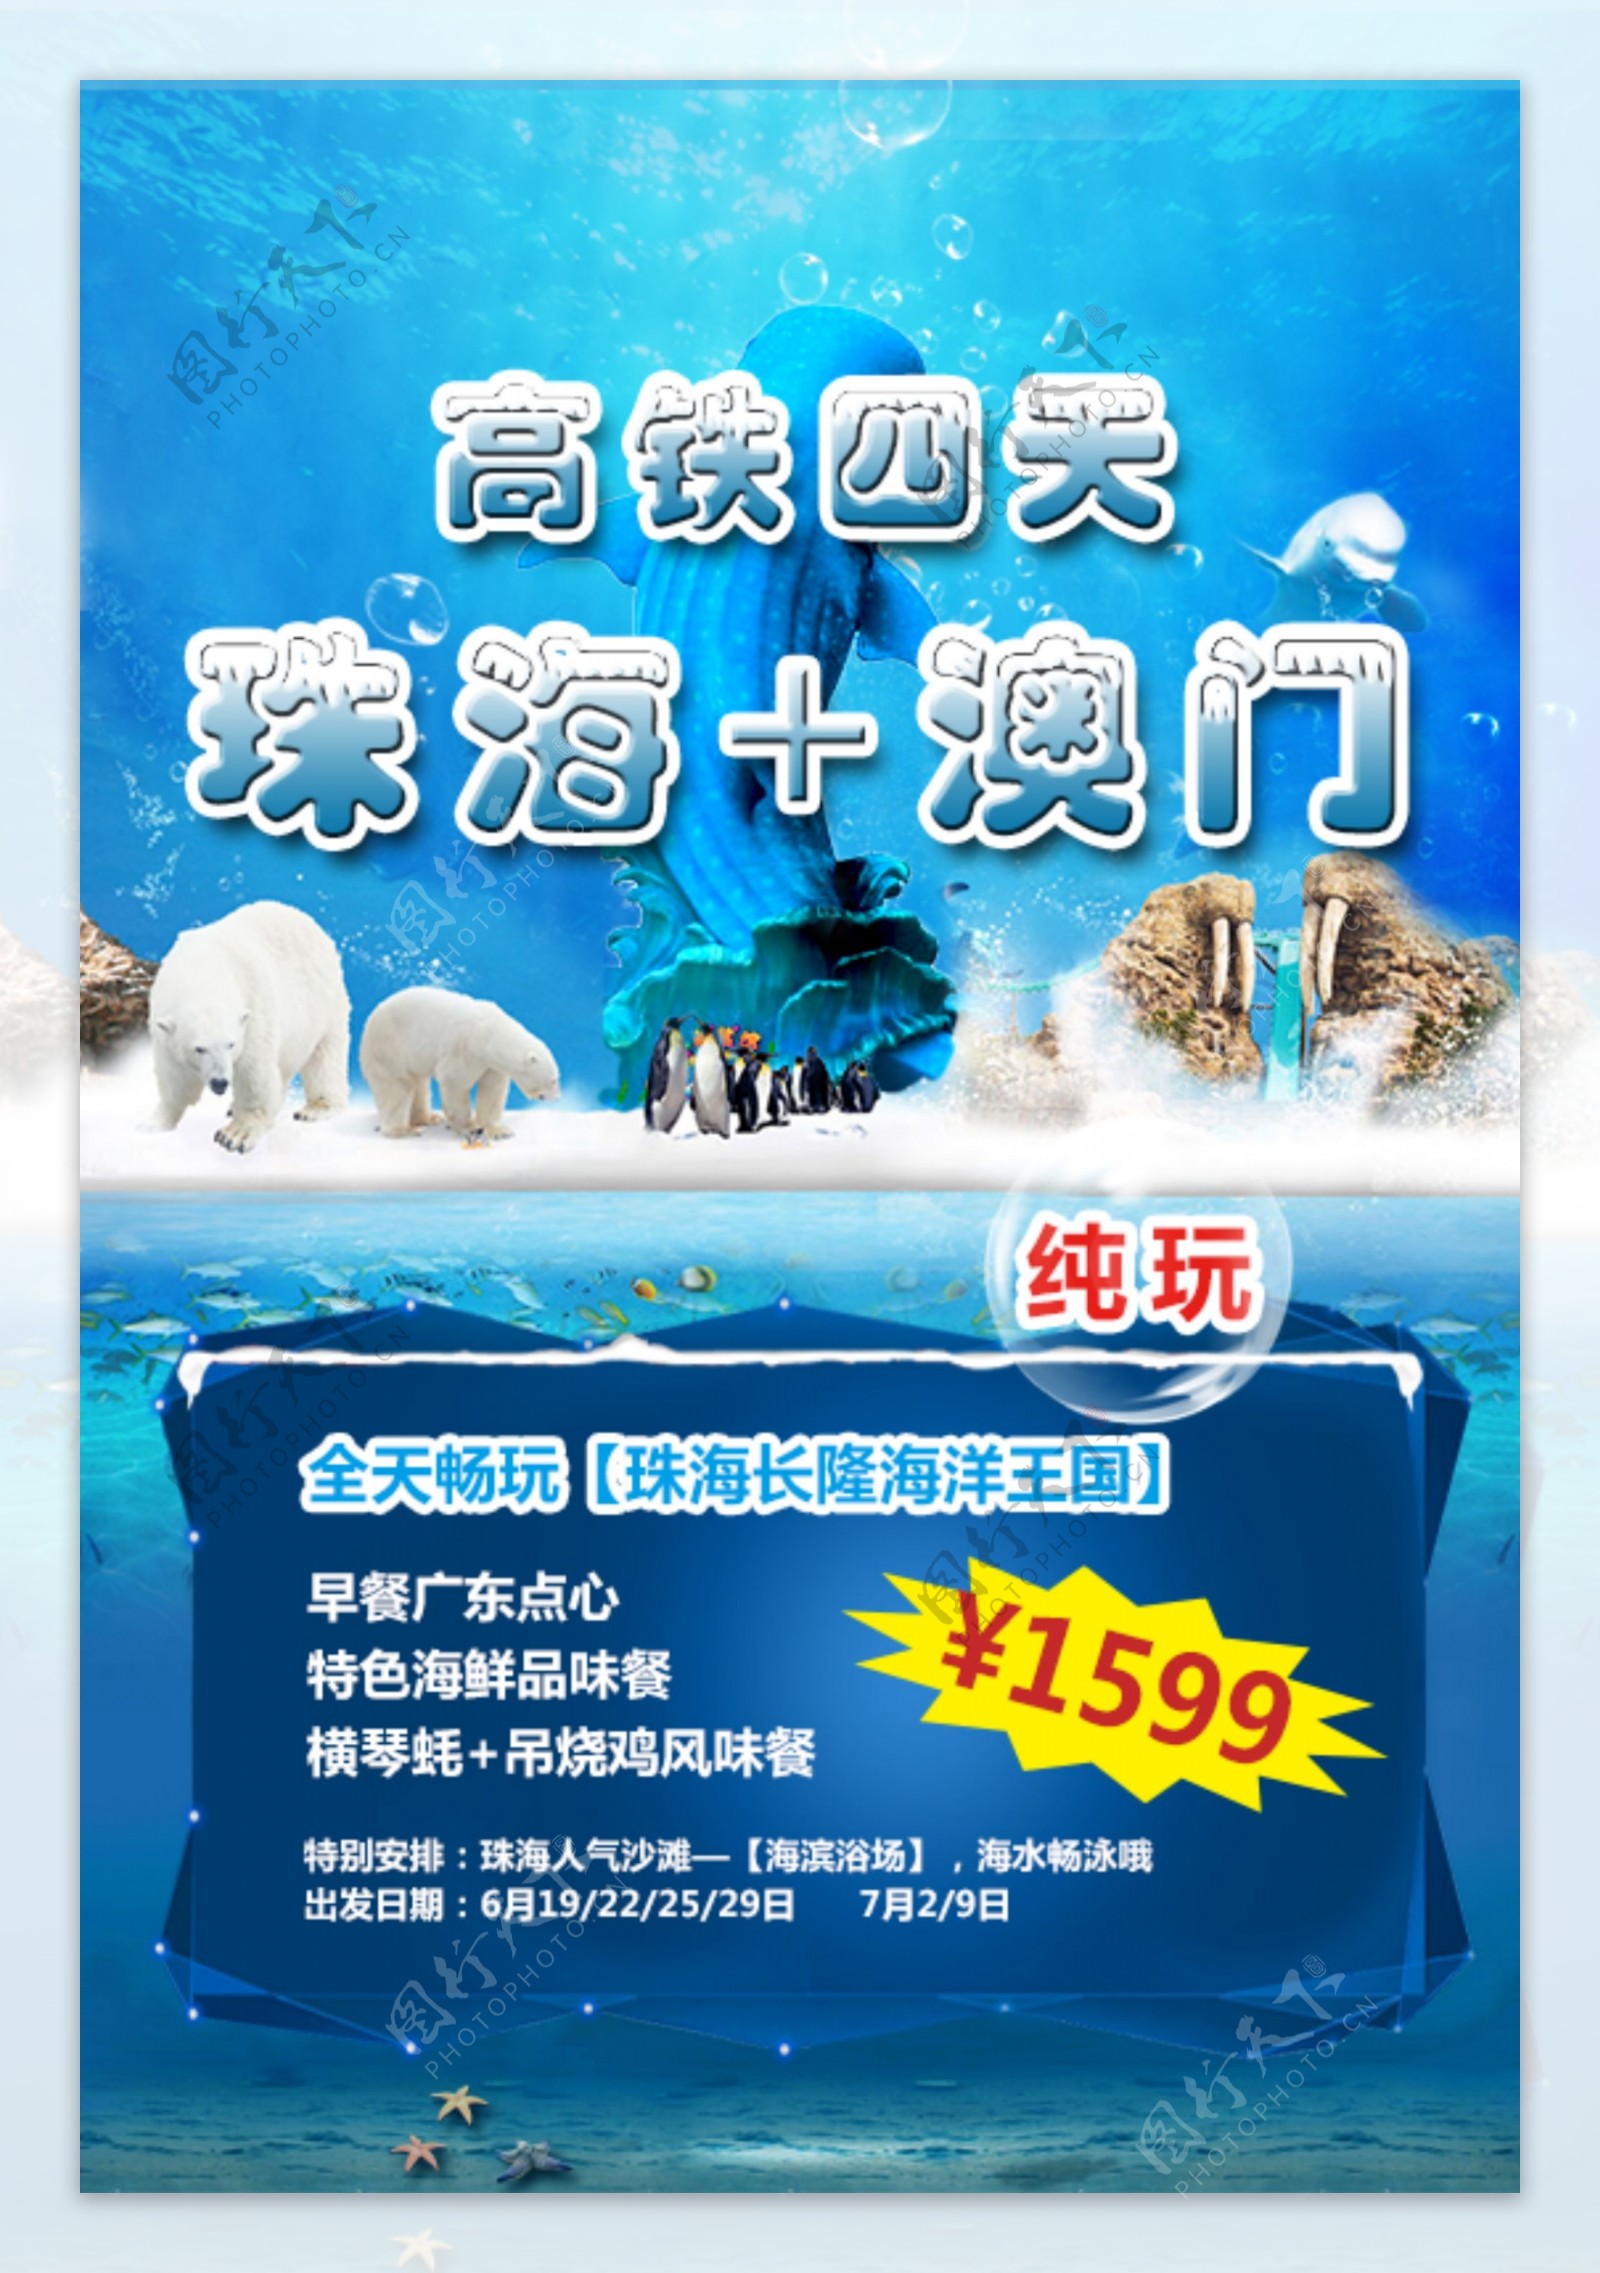 珠海长隆广告图片